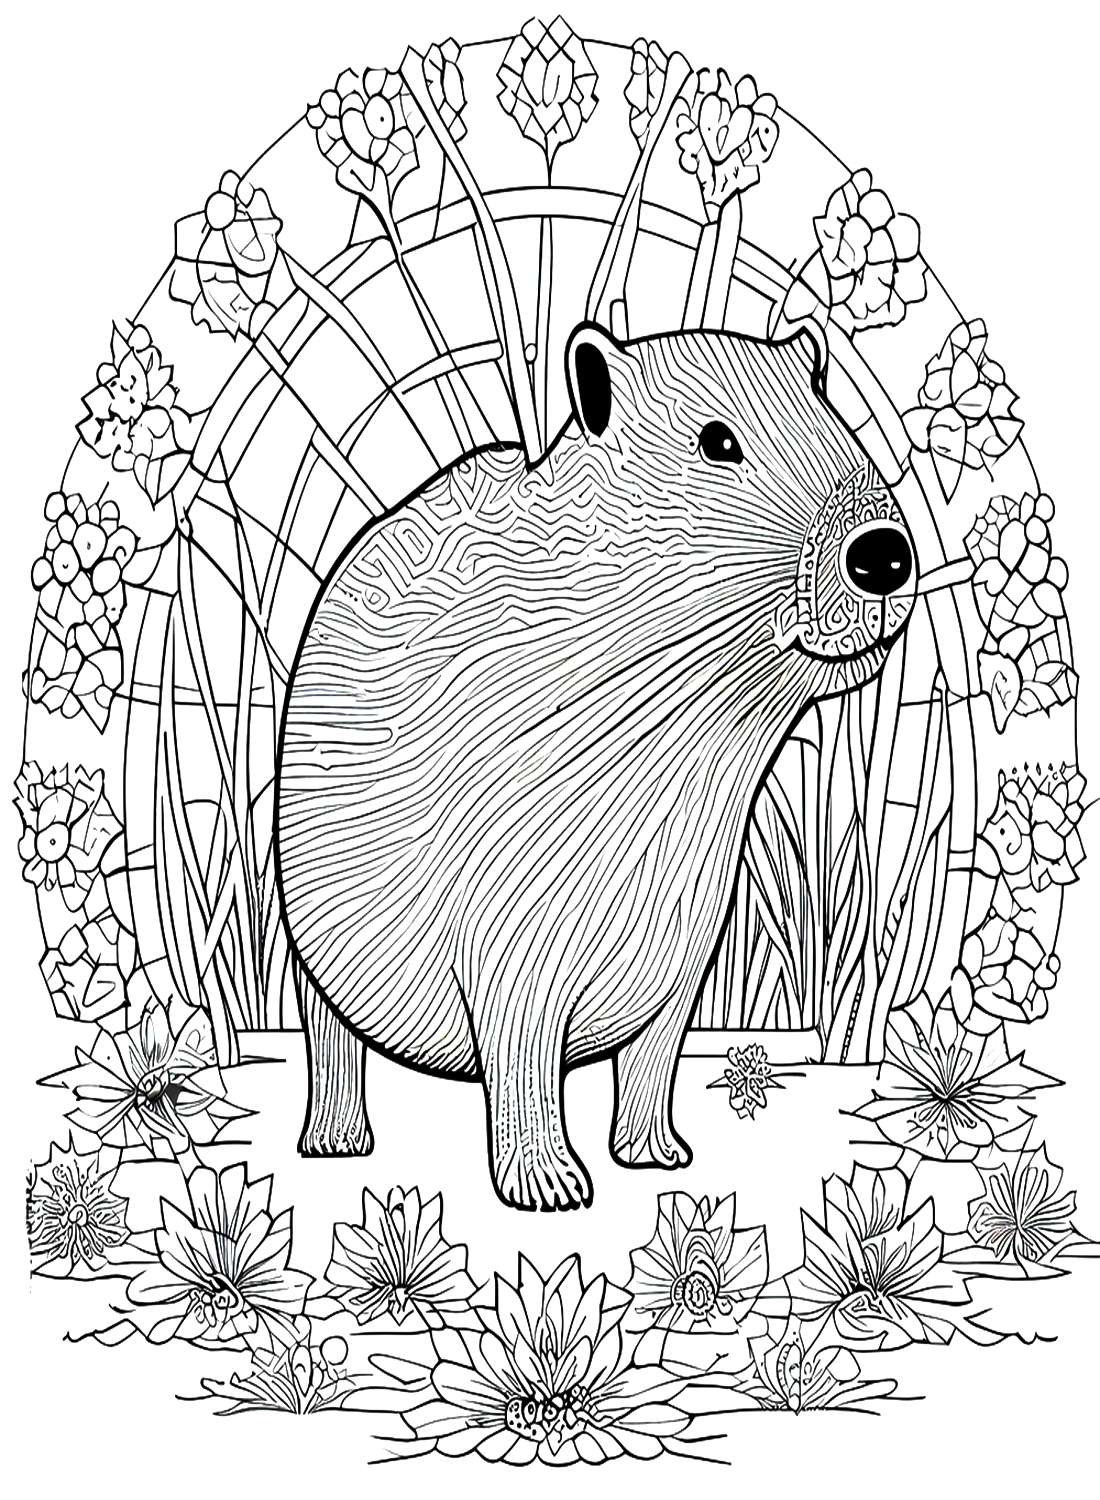 Капибара в стиле дзентангл от Capybara